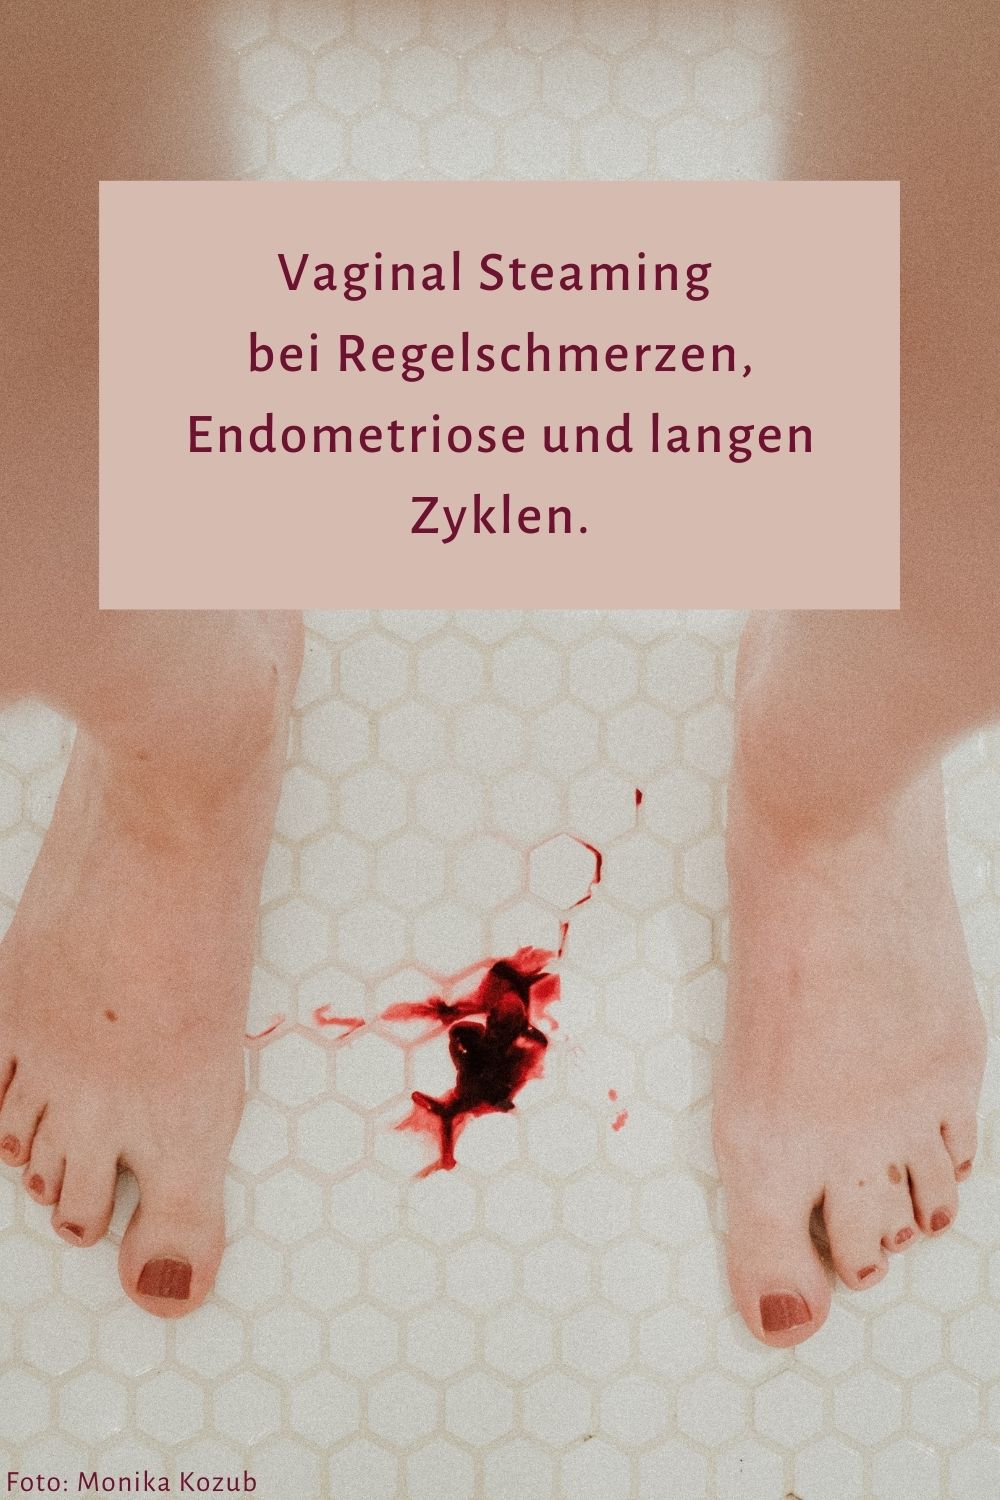 Vaginal Steaming Austria - Regelschmerzen, unregelmäßige Zyklen und Endometriose